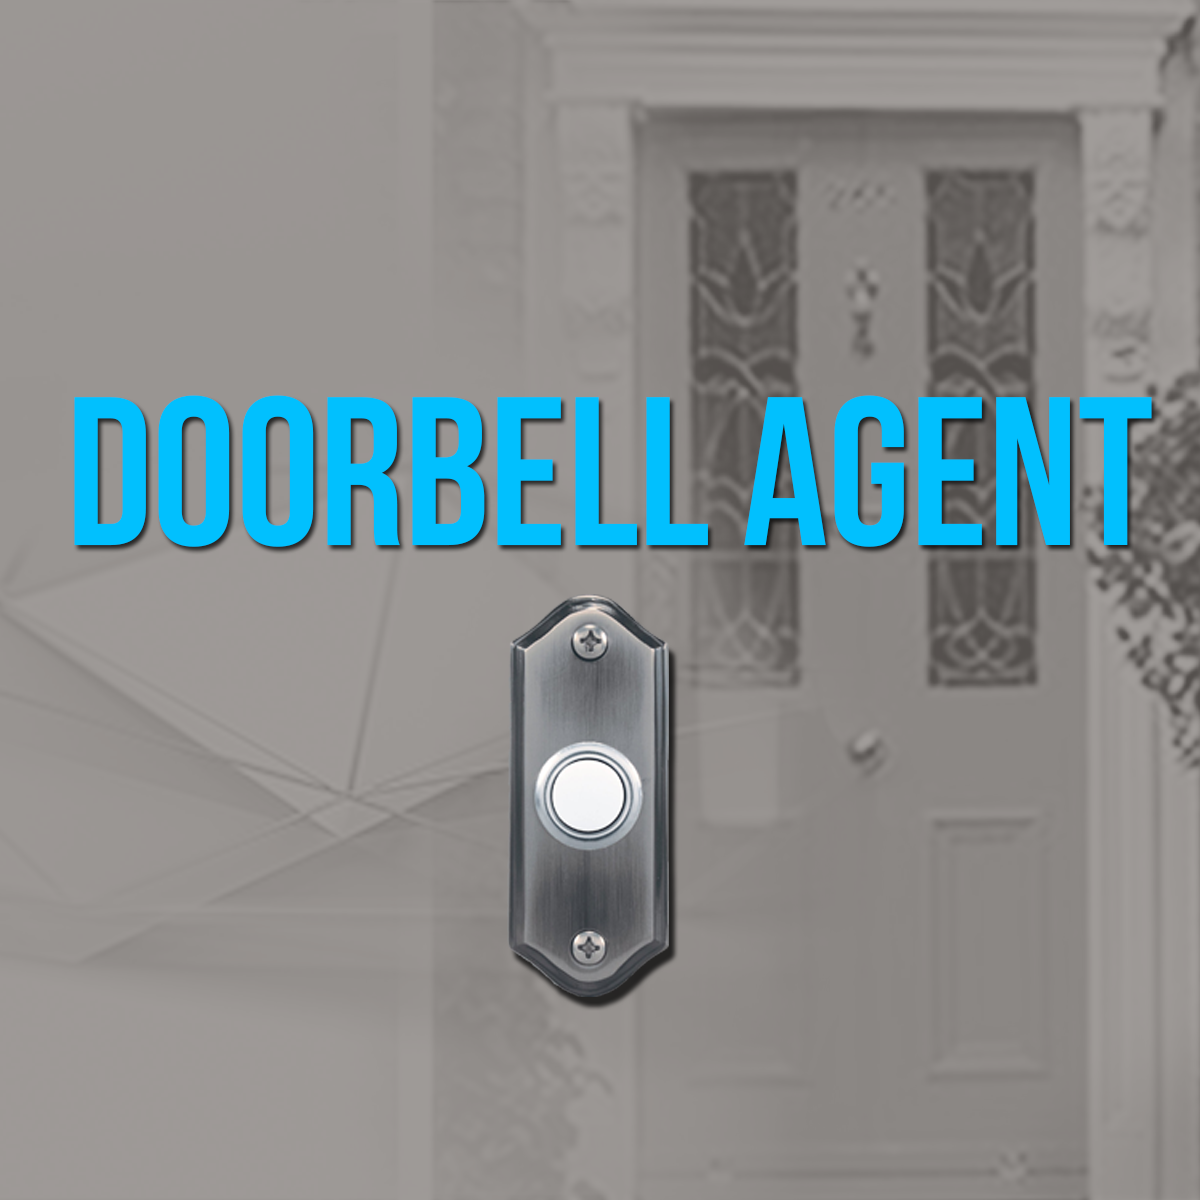 Doorbell Agent.png